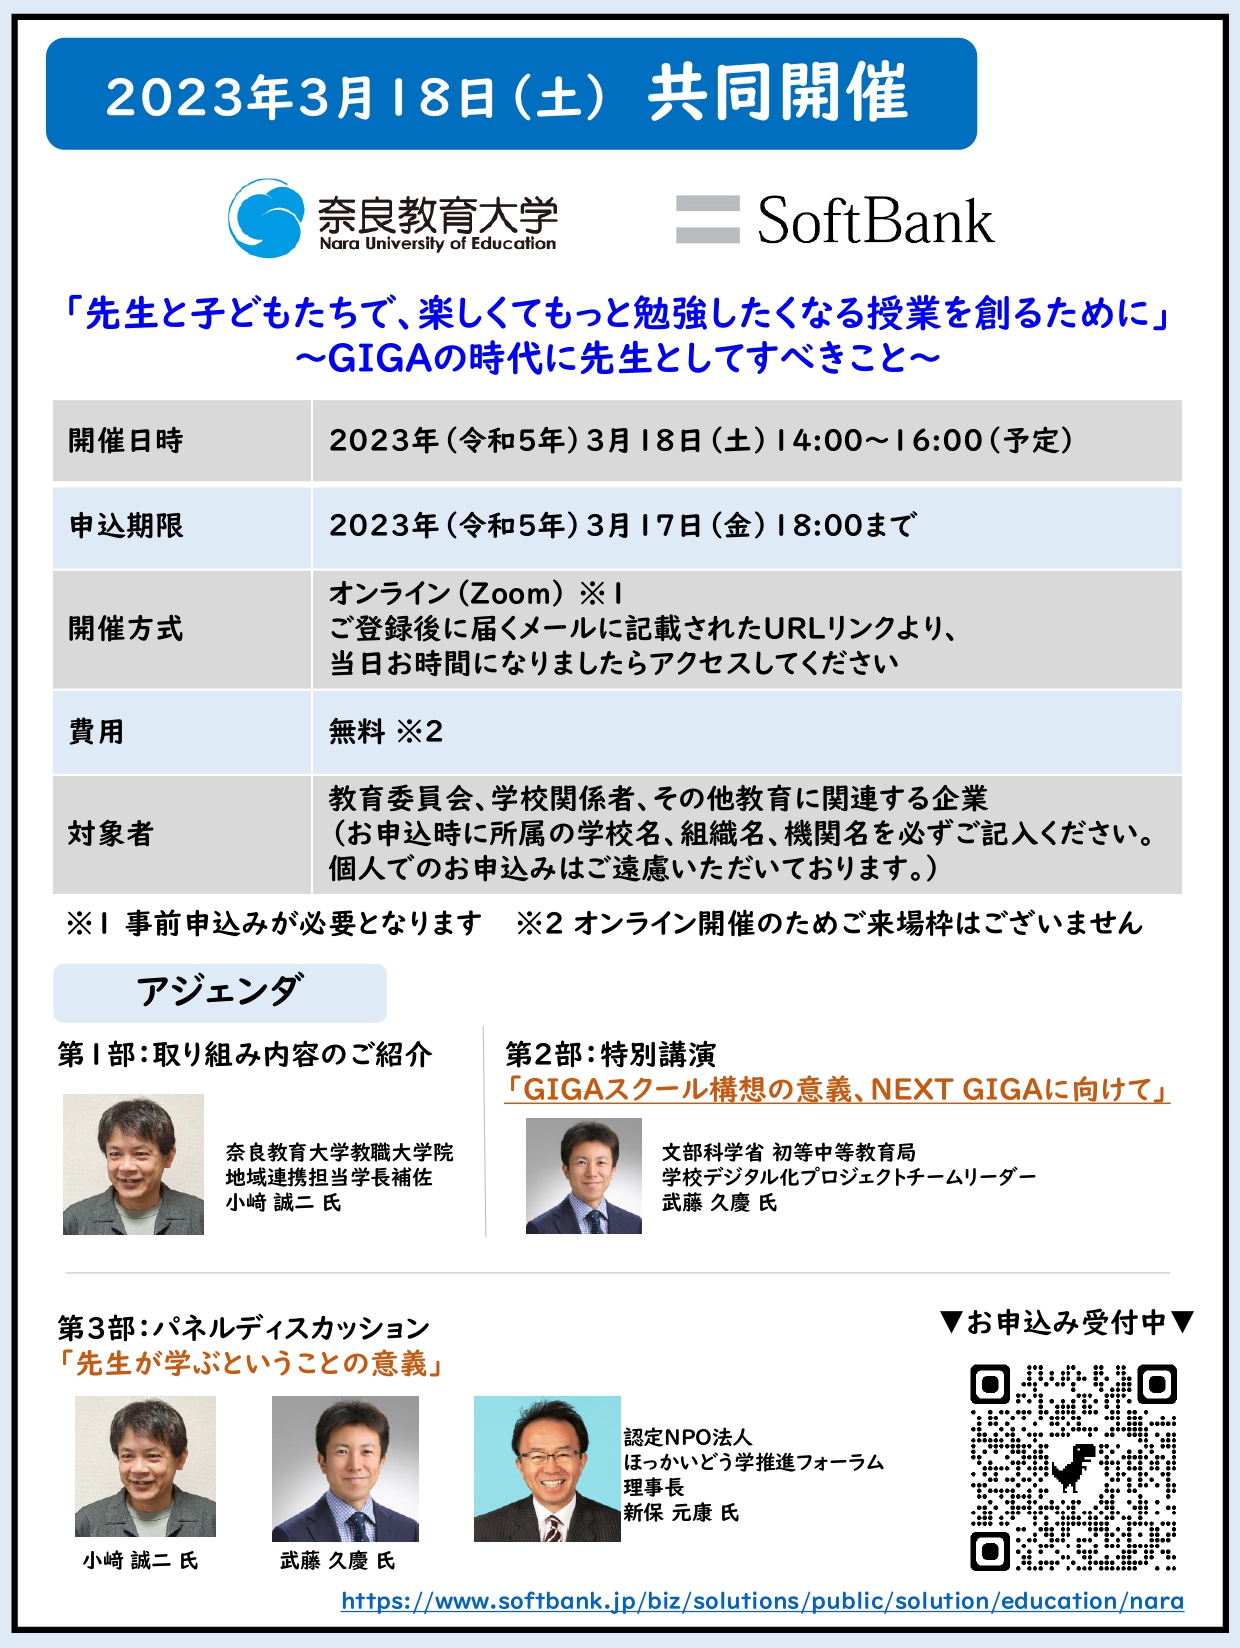 奈良教育大学ソフトバンク共同開催イベント